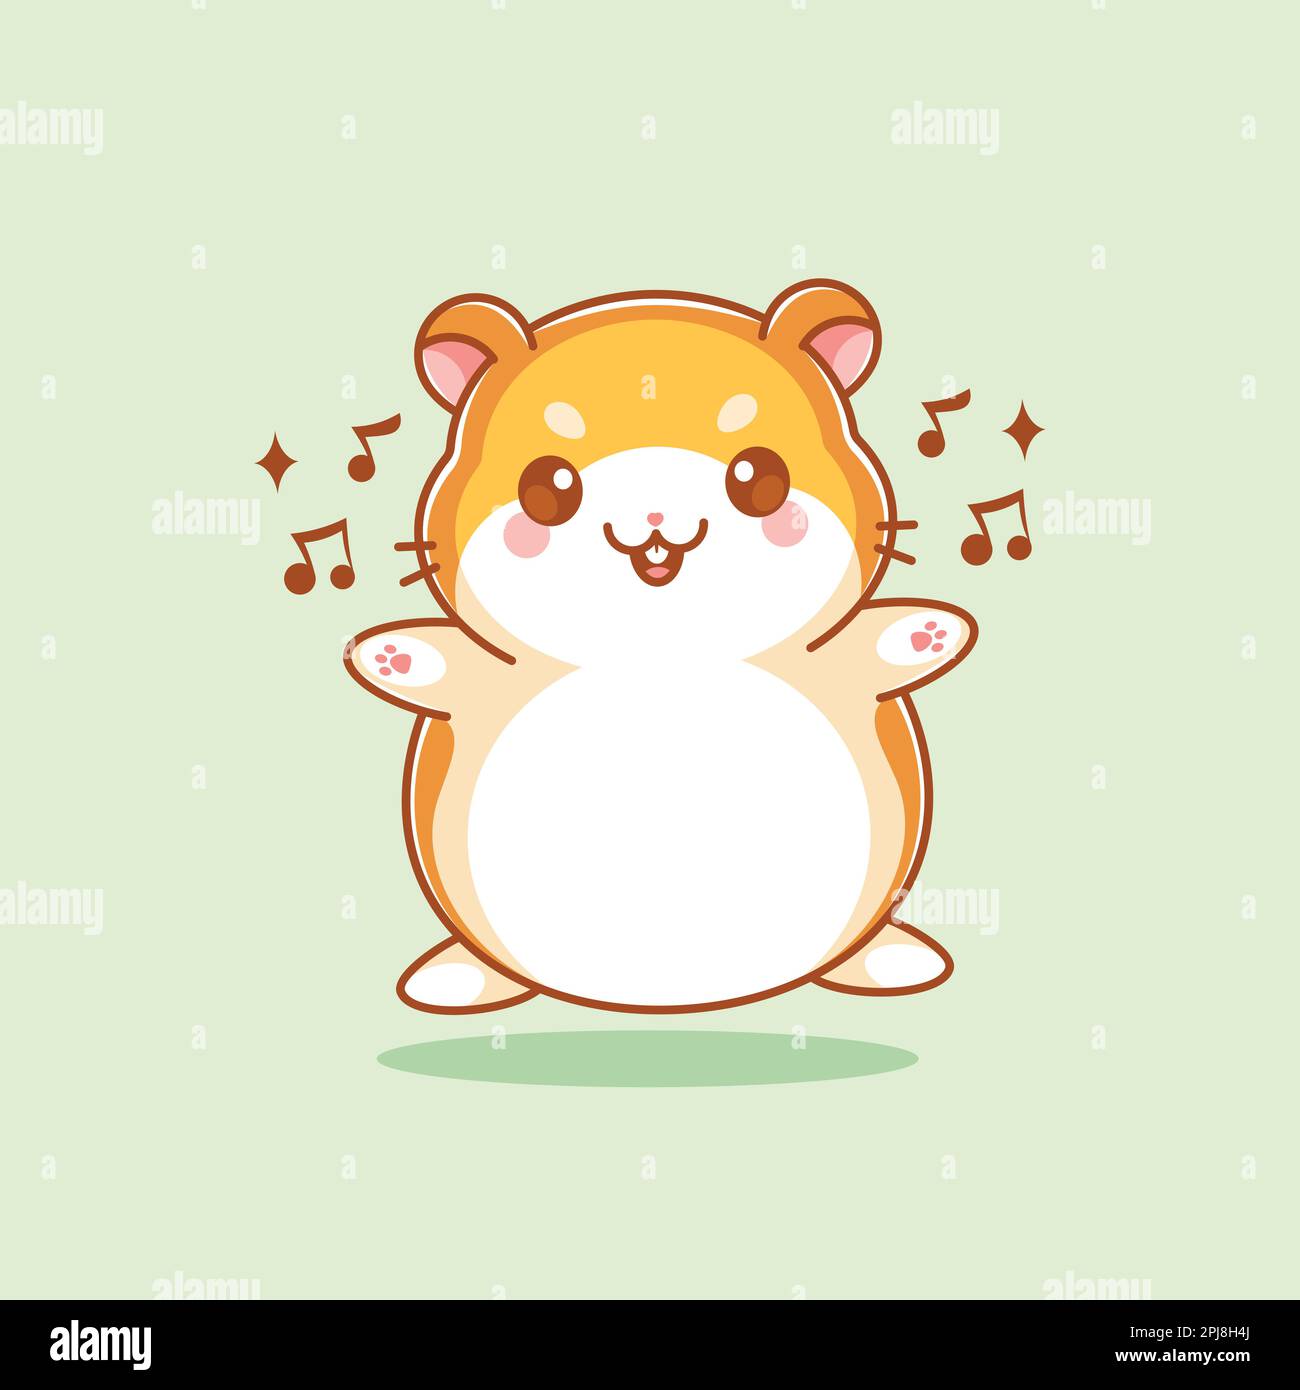 Joli dessin animé chantant le hamster Illustration de Vecteur